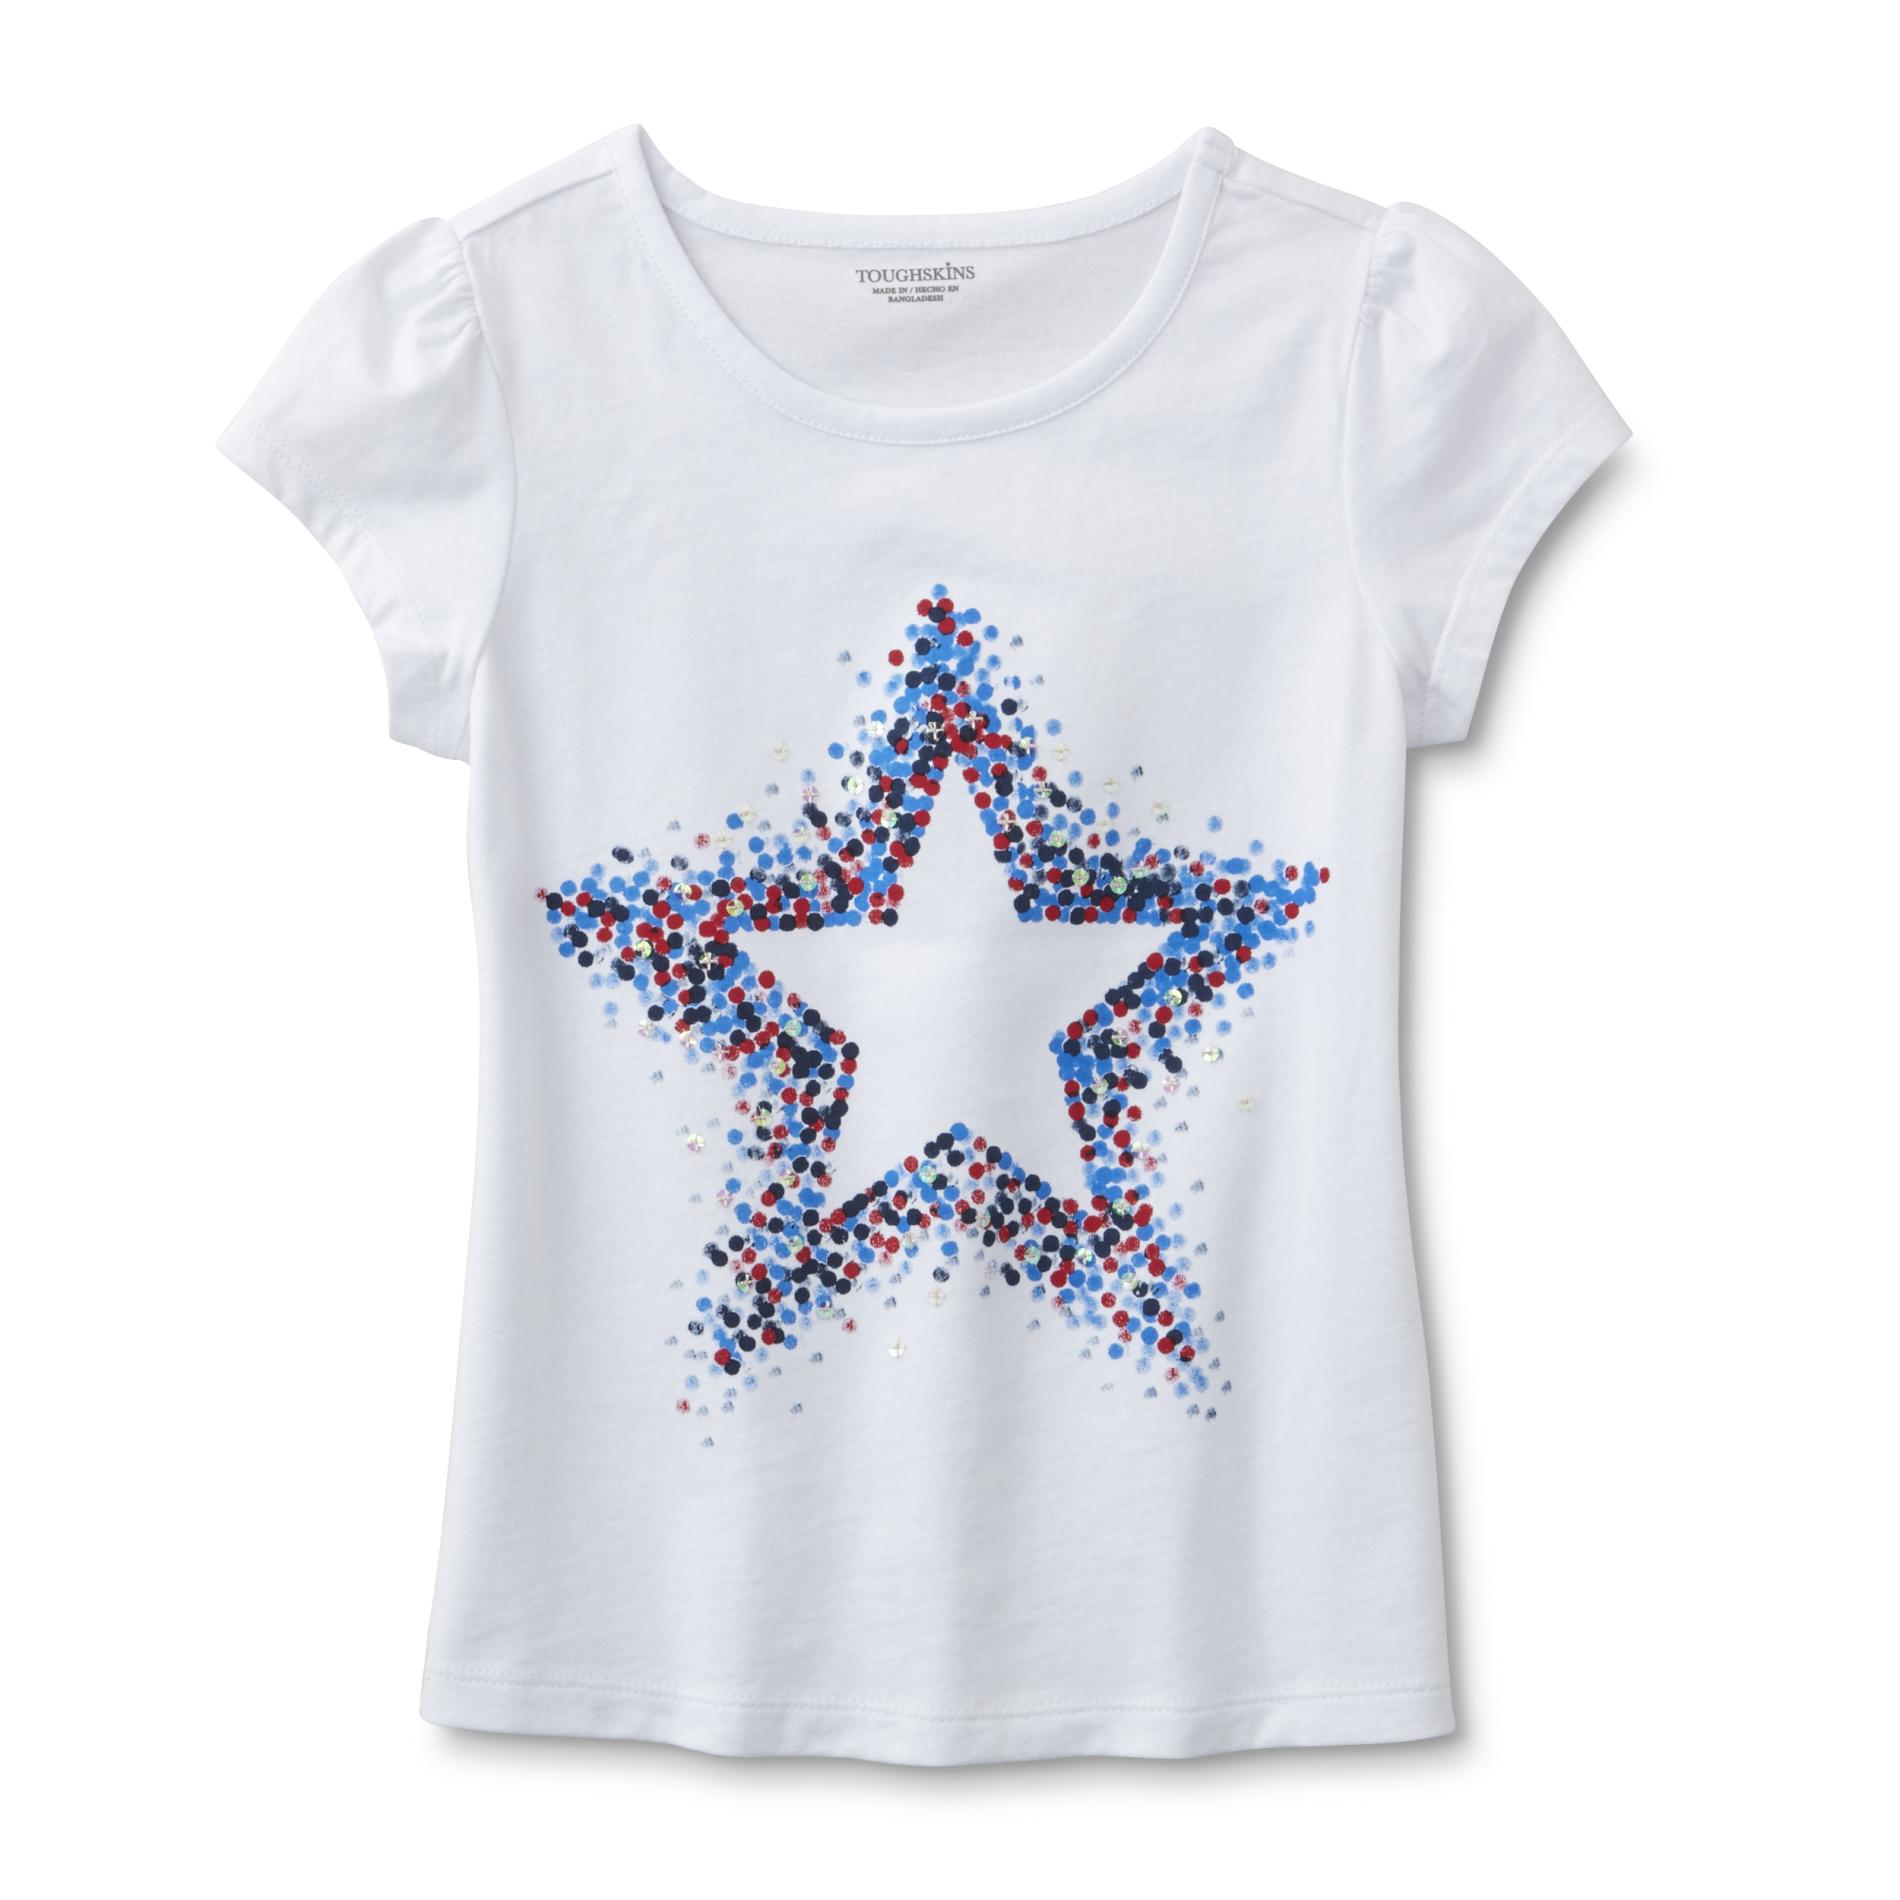 Girl's Graphic T-Shirt - Stars